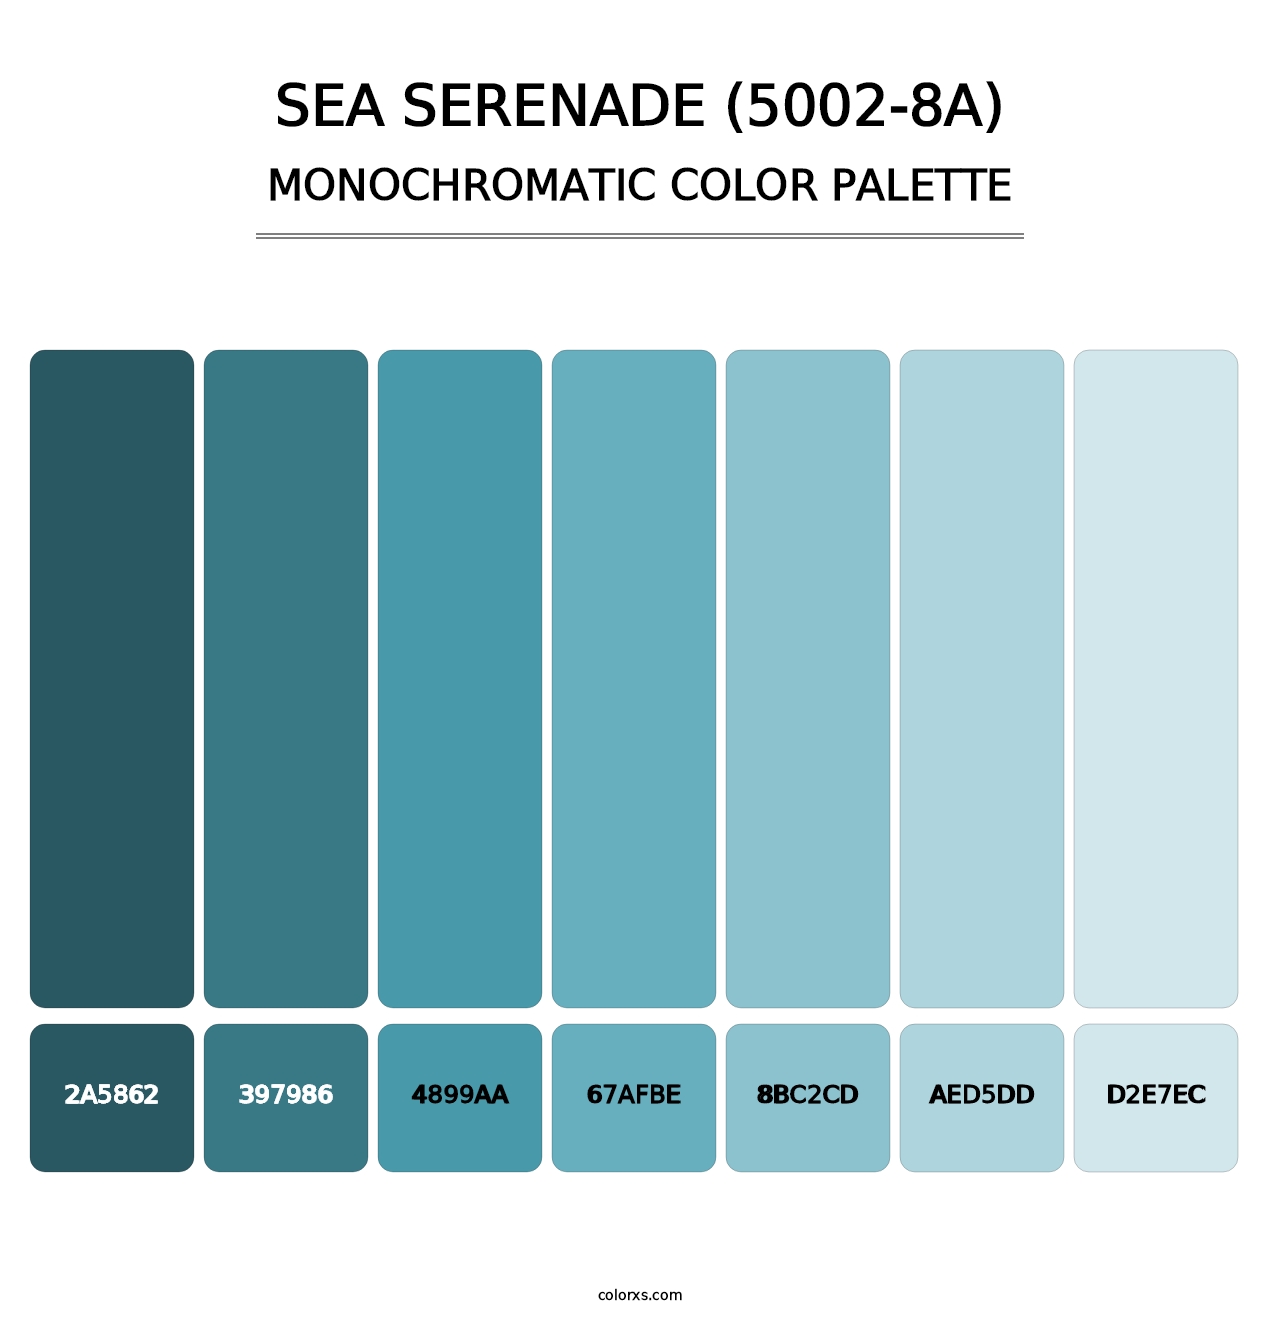 Sea Serenade (5002-8A) - Monochromatic Color Palette